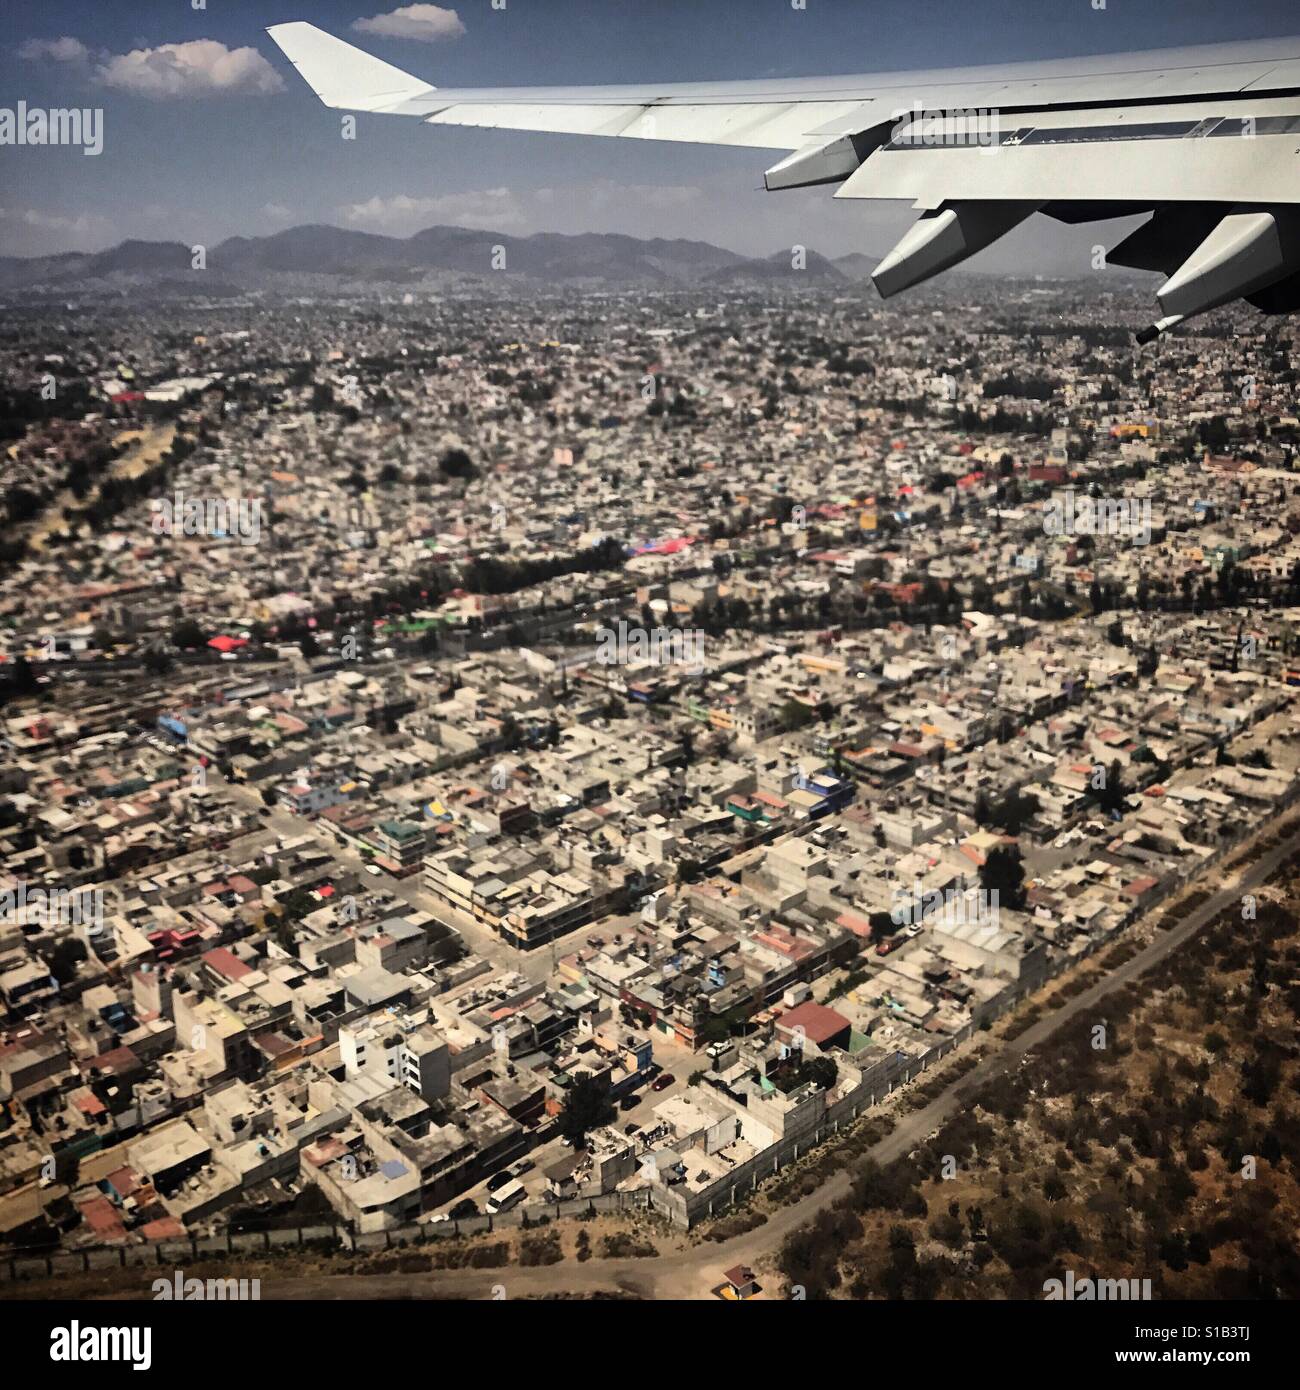 A plane flies over Mexico City, Mexico Stock Photo